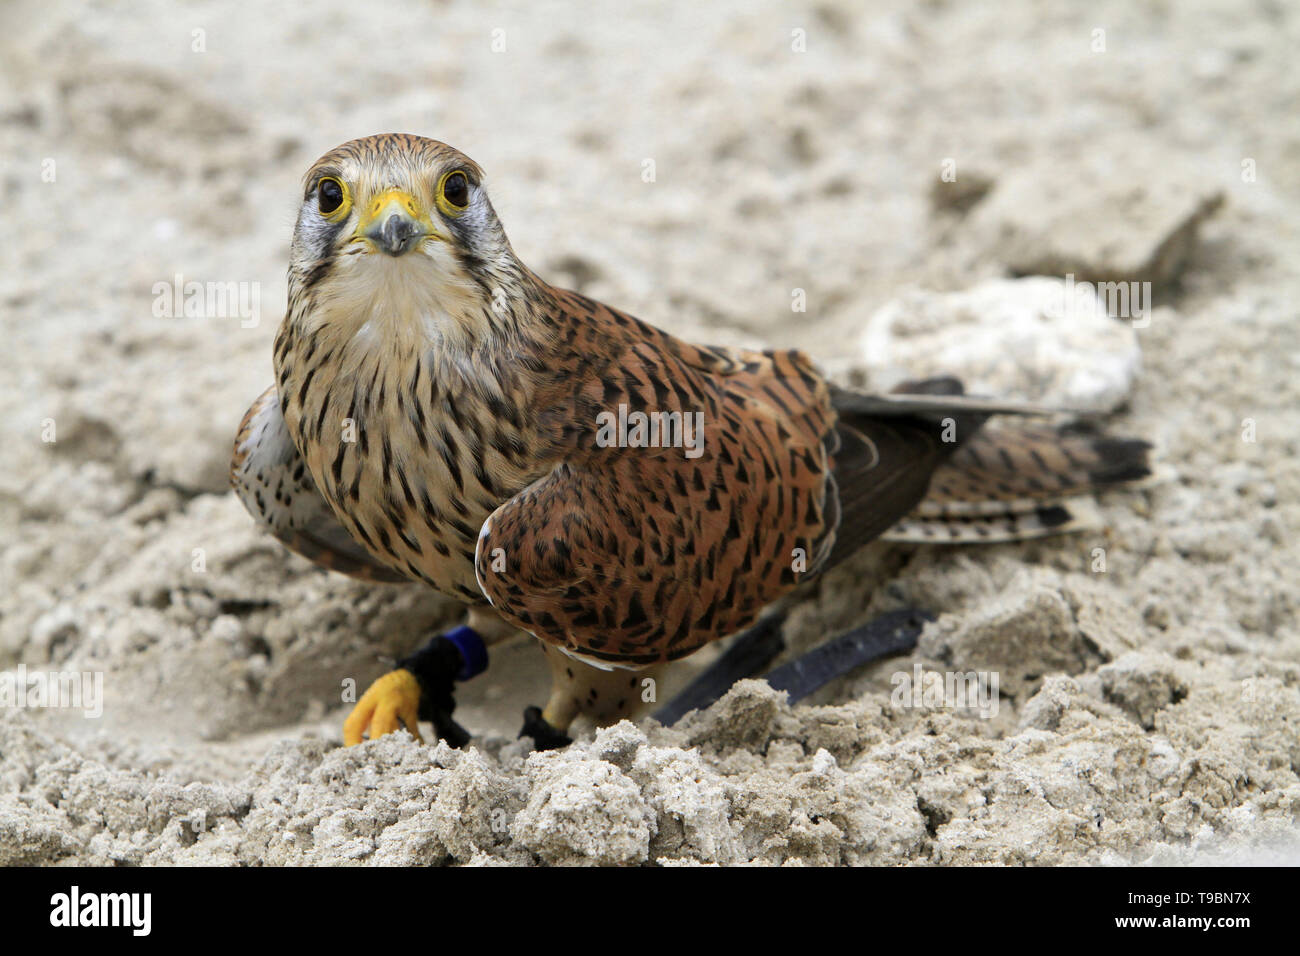 Faucon crécerelle. Falco tinnunculus. Stock Photo